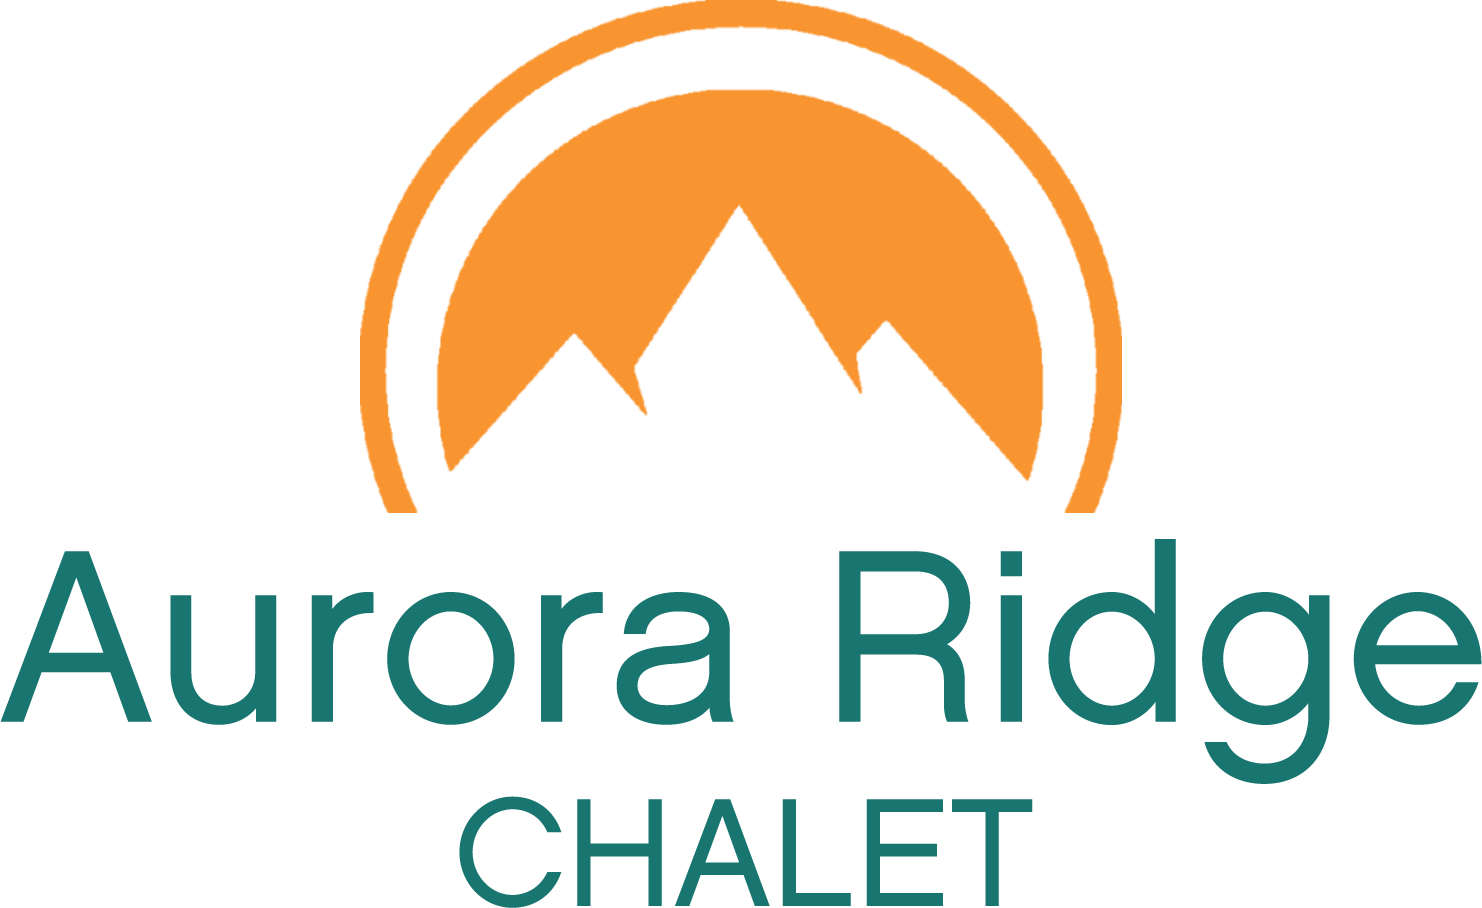 Aurora Ridge Chalet logo